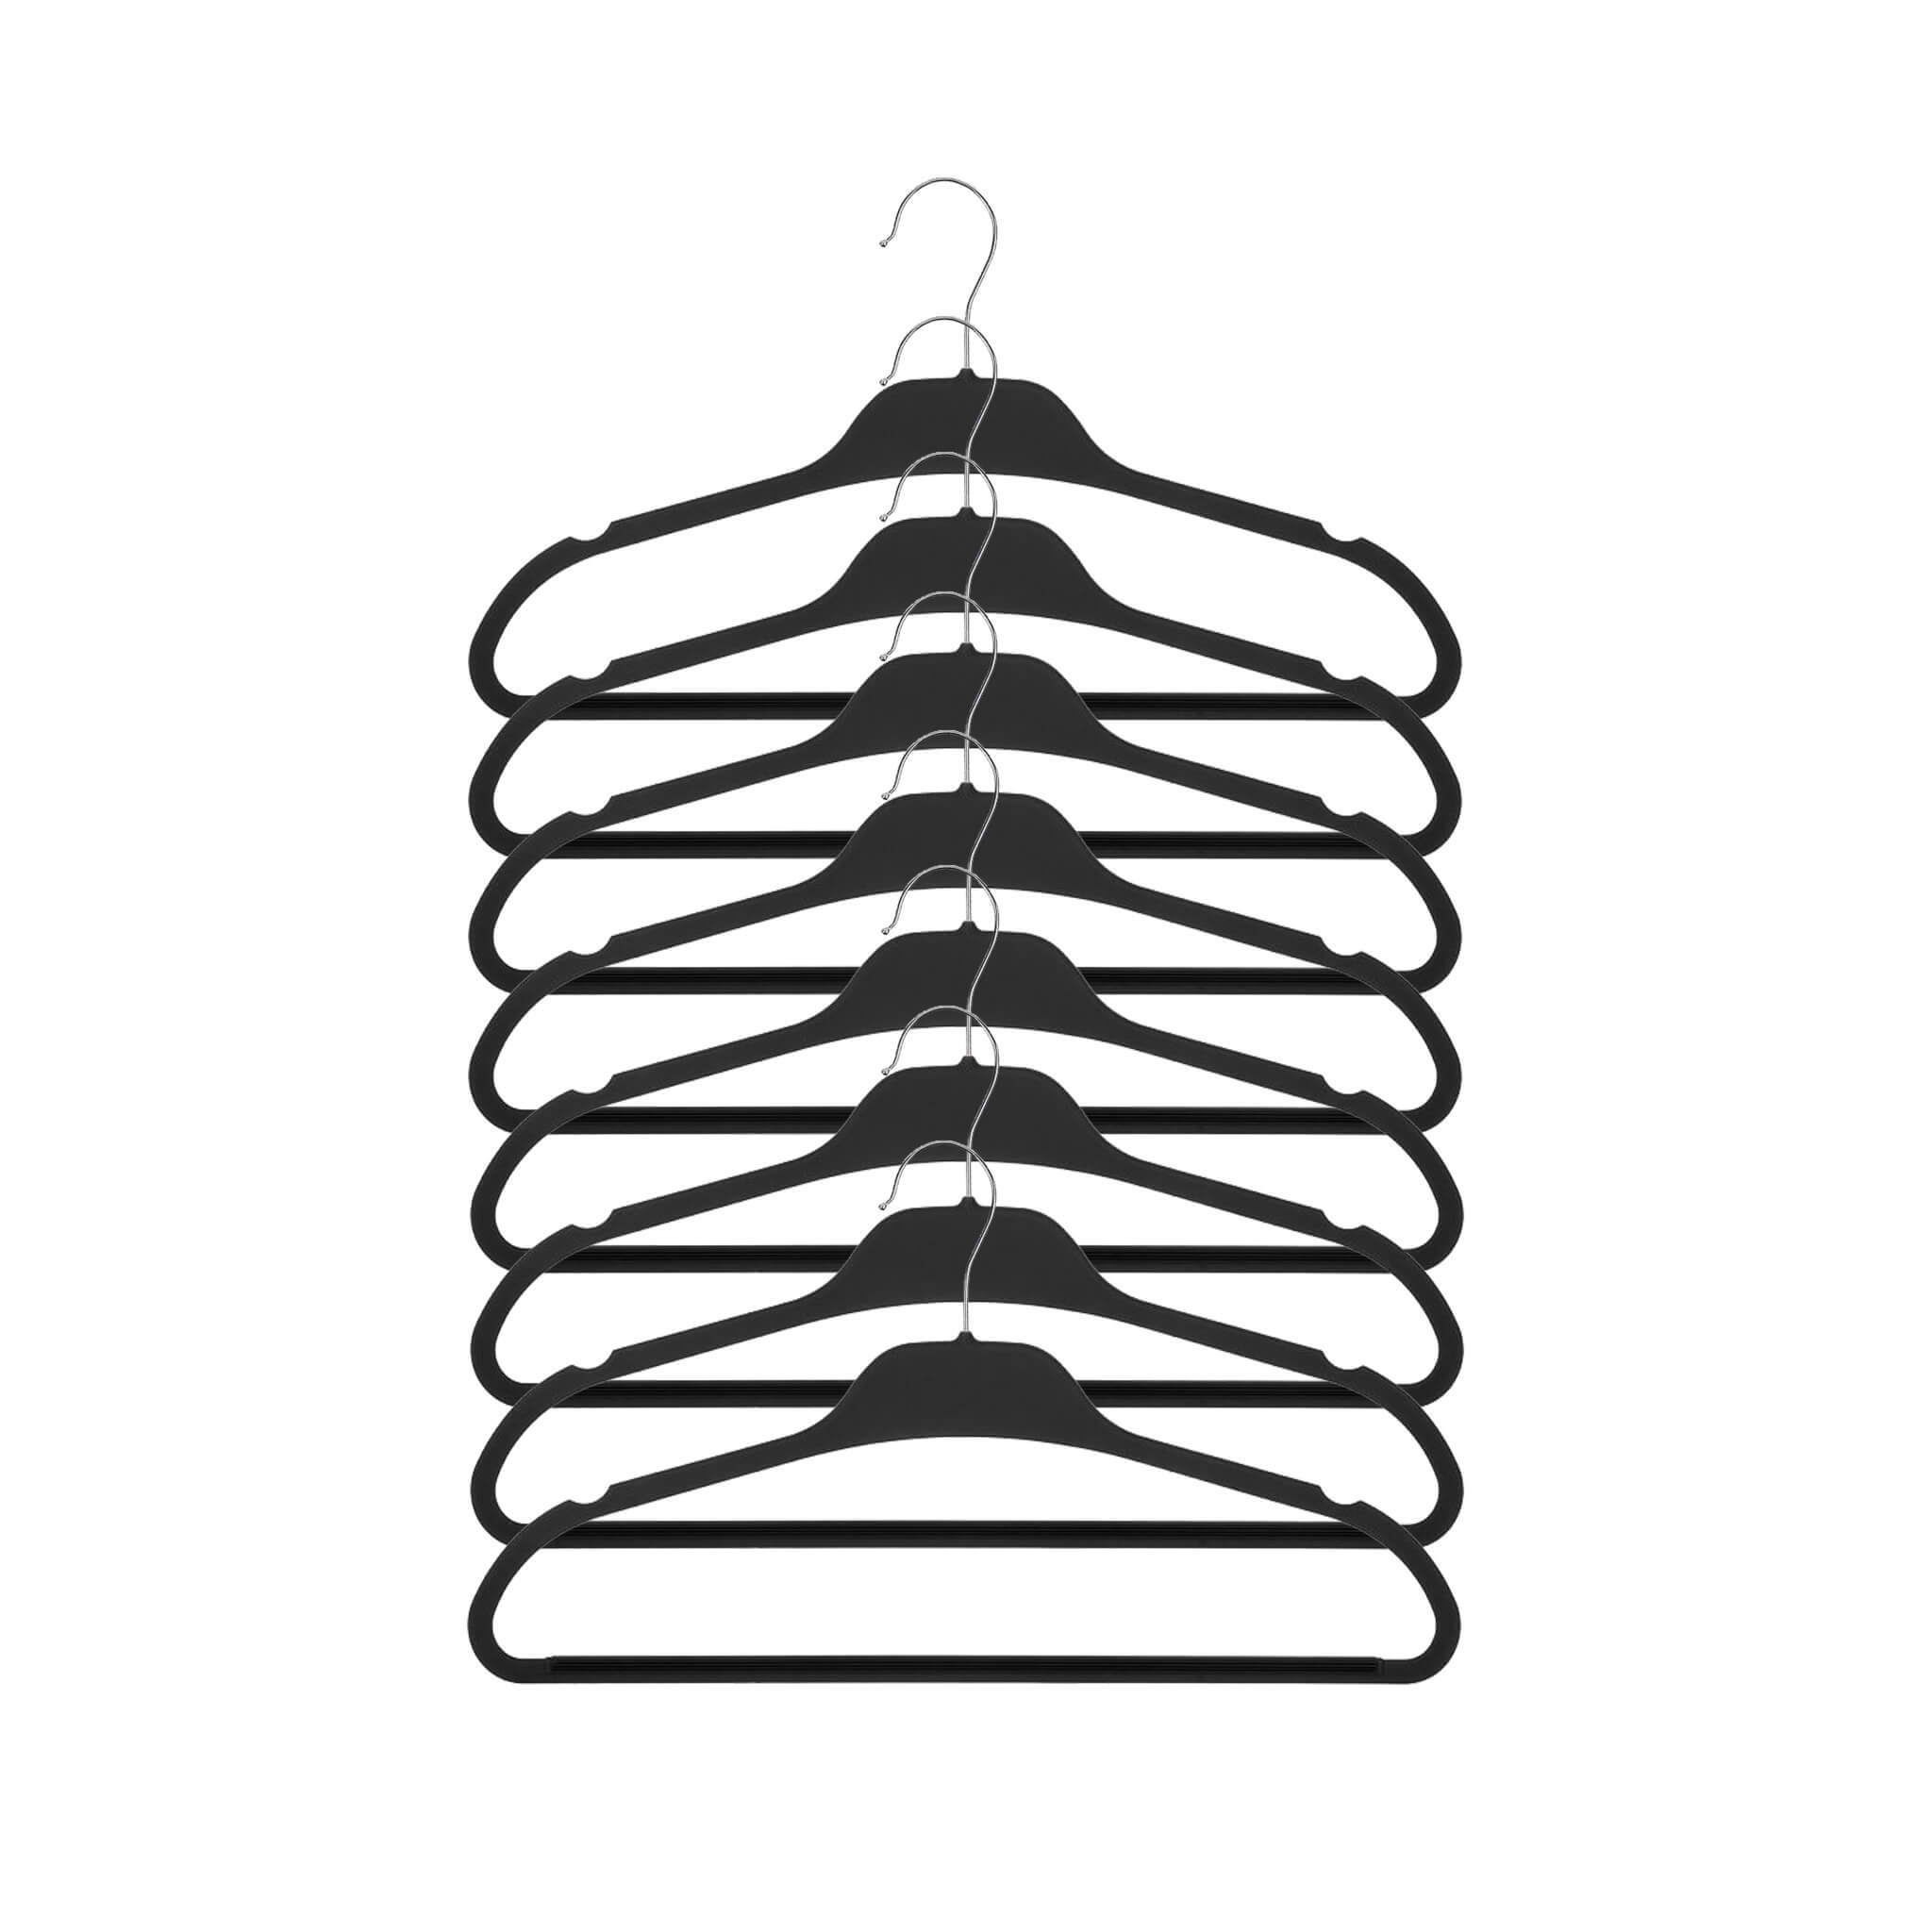 Set of 8 hangers